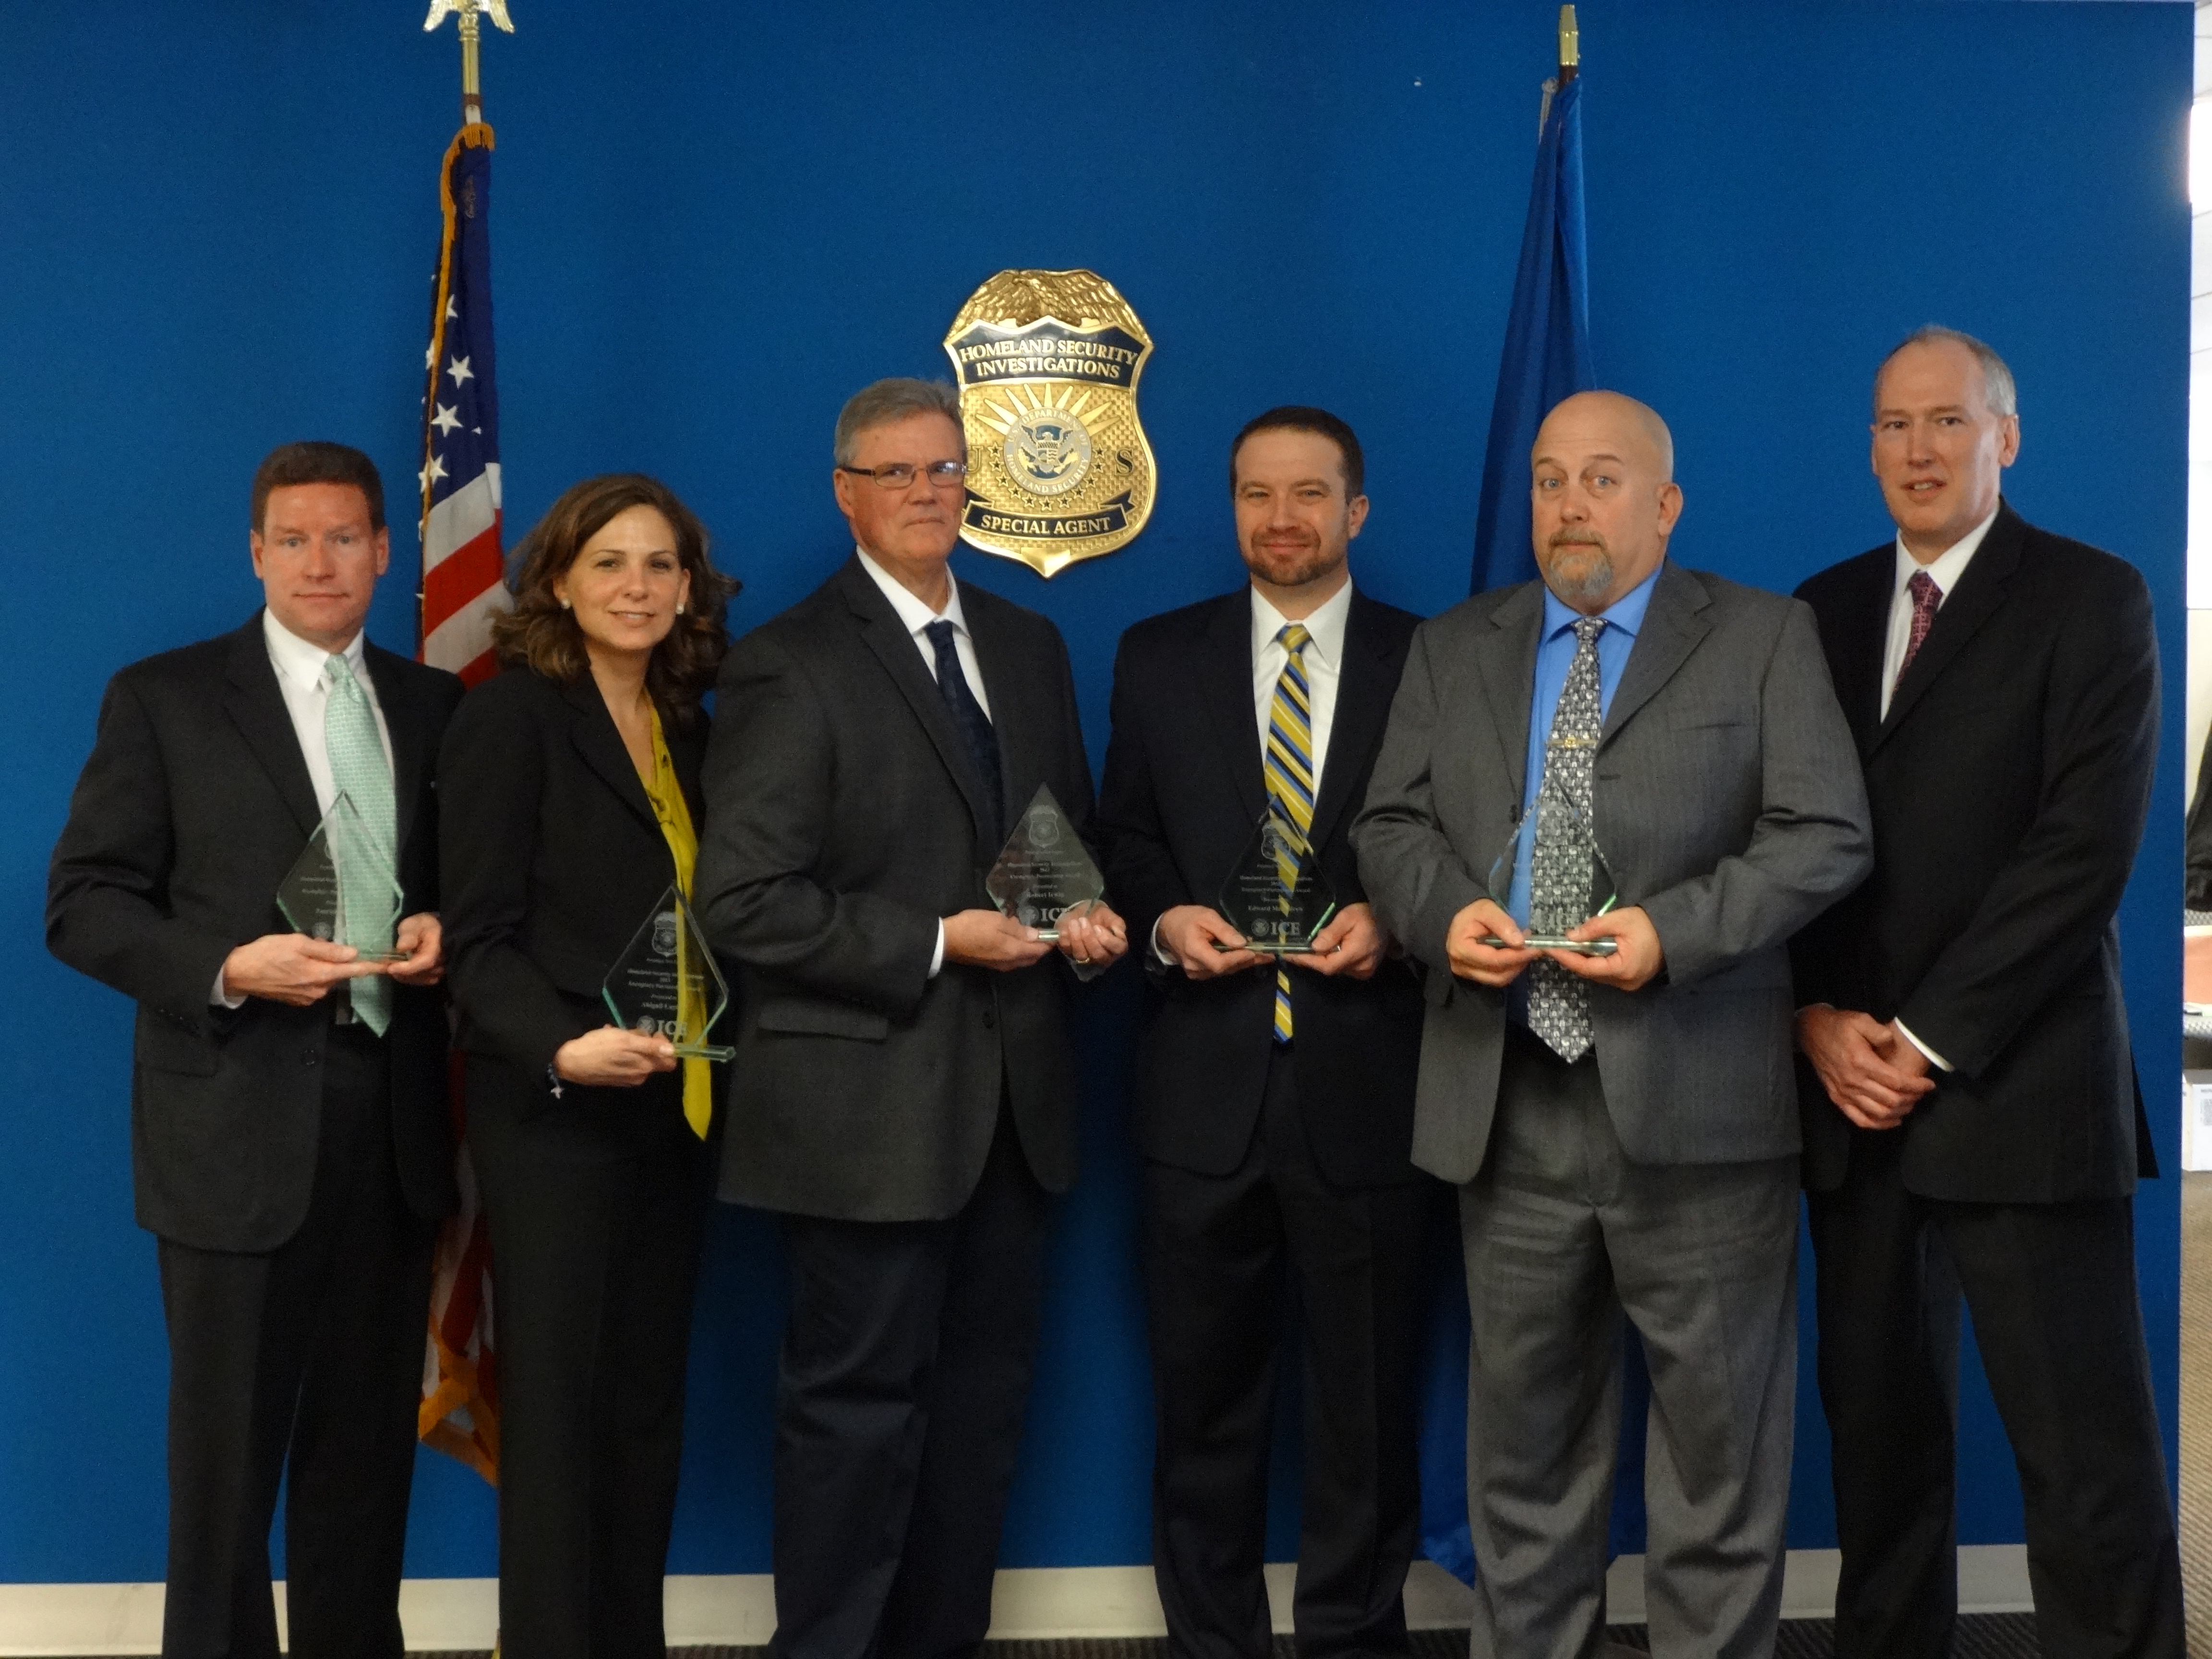 HSI Wilmington recognizes law enforcement partnerships